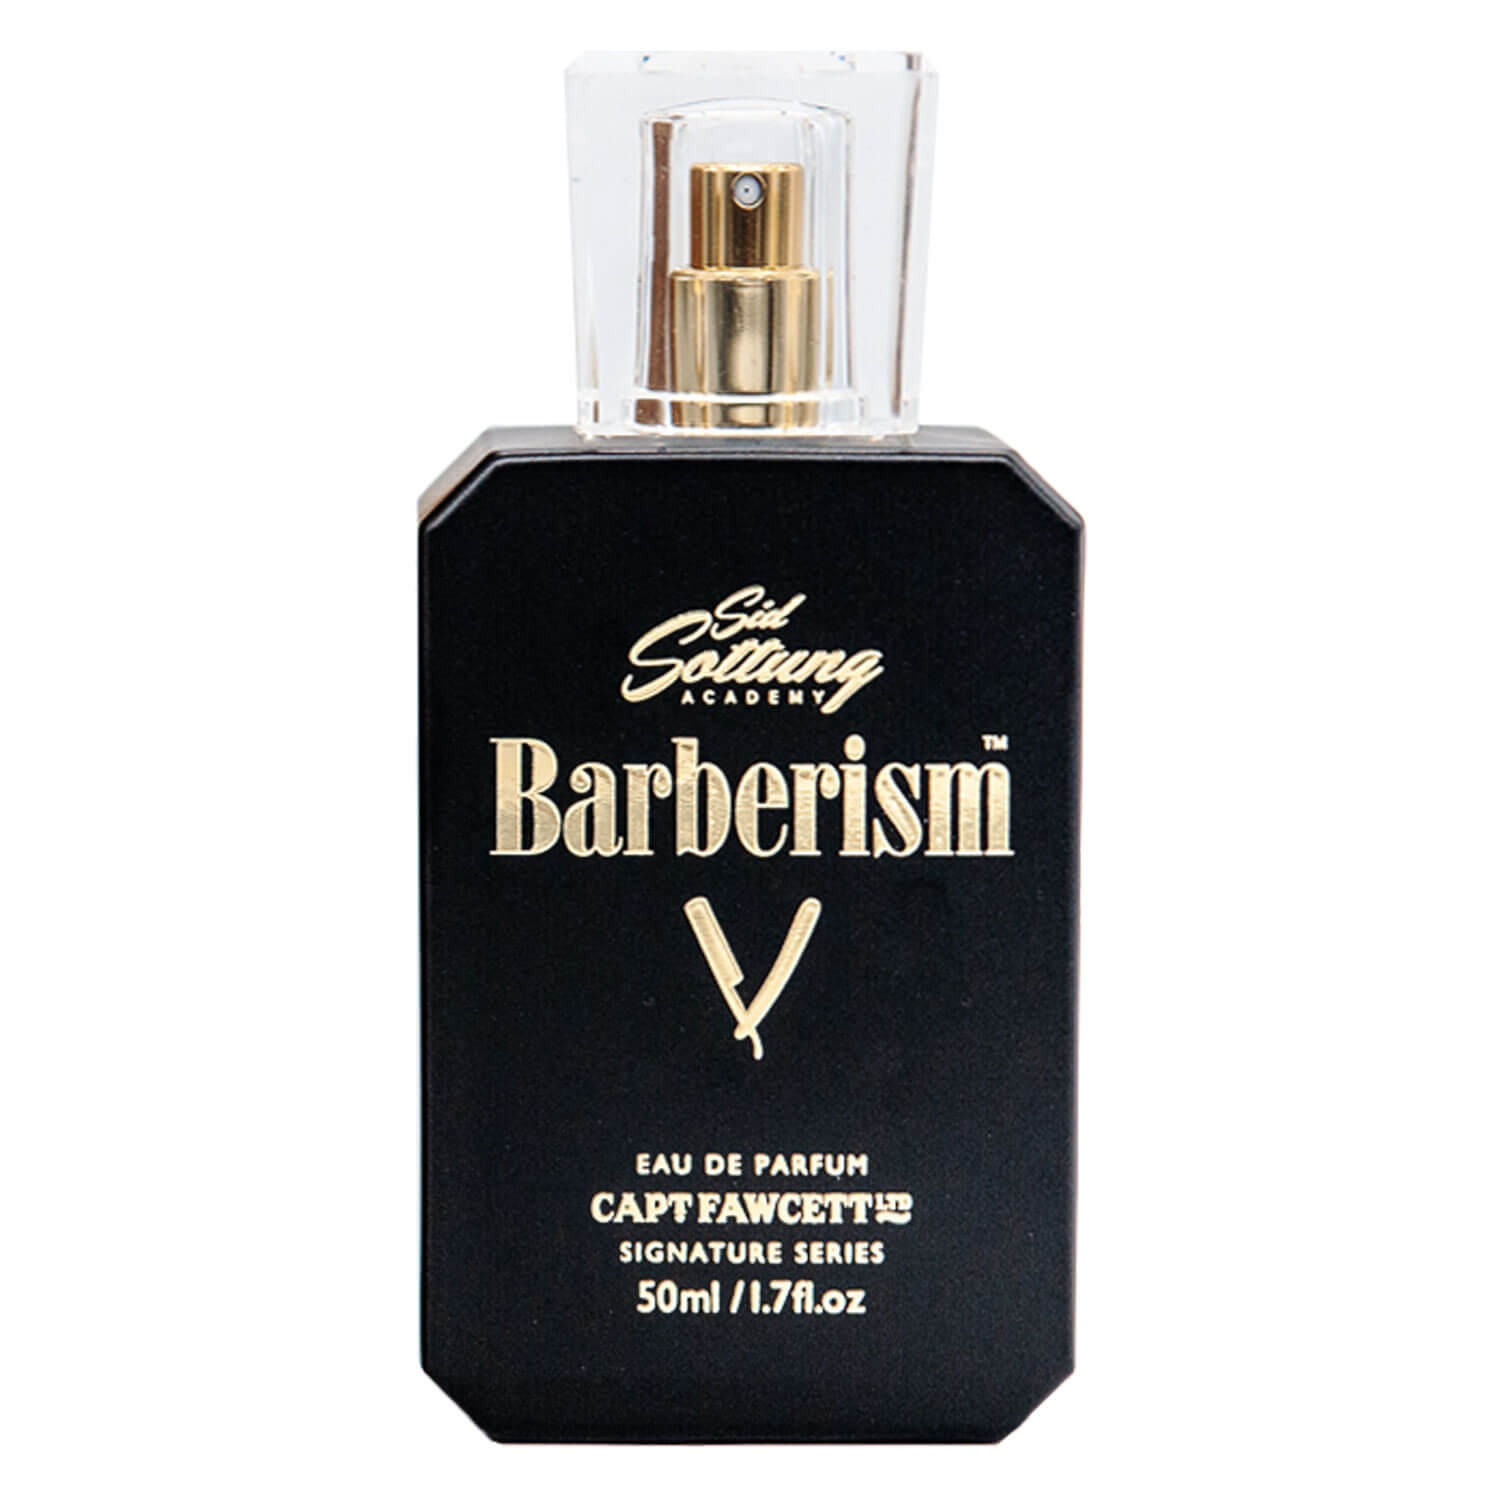 Product image from Capt. Fawcett Care - Sid Sottung's Barberism Eau de Parfum